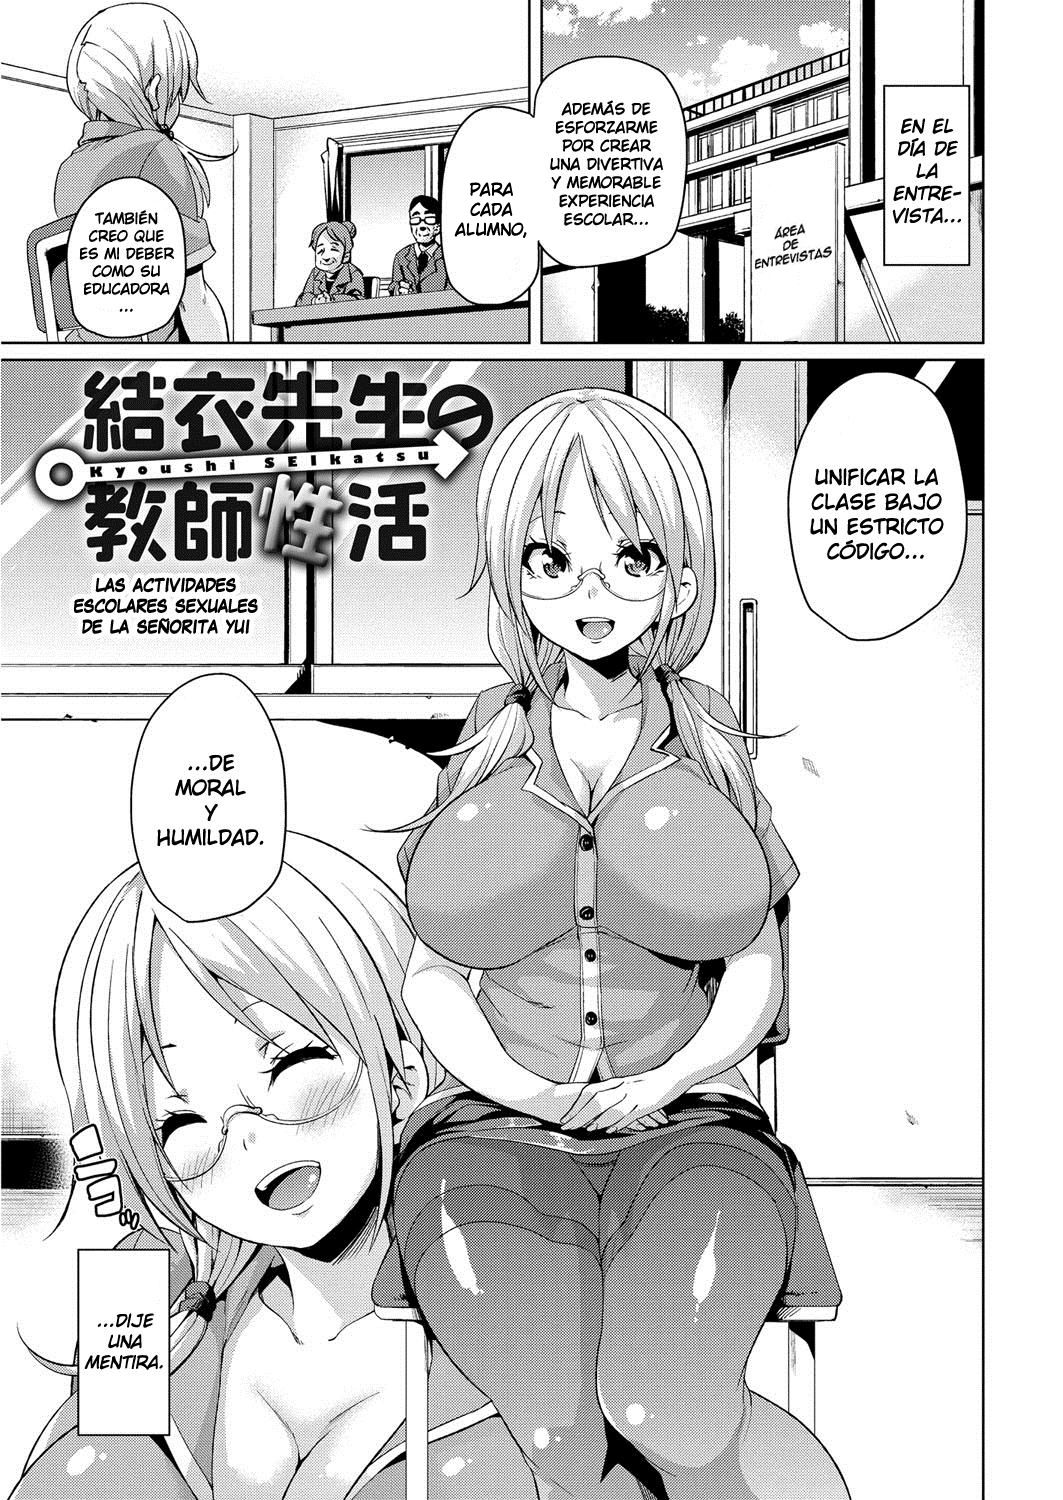 Las Actividades Sexuales Escolares de la Señorita Yui (Cark-san) - 0